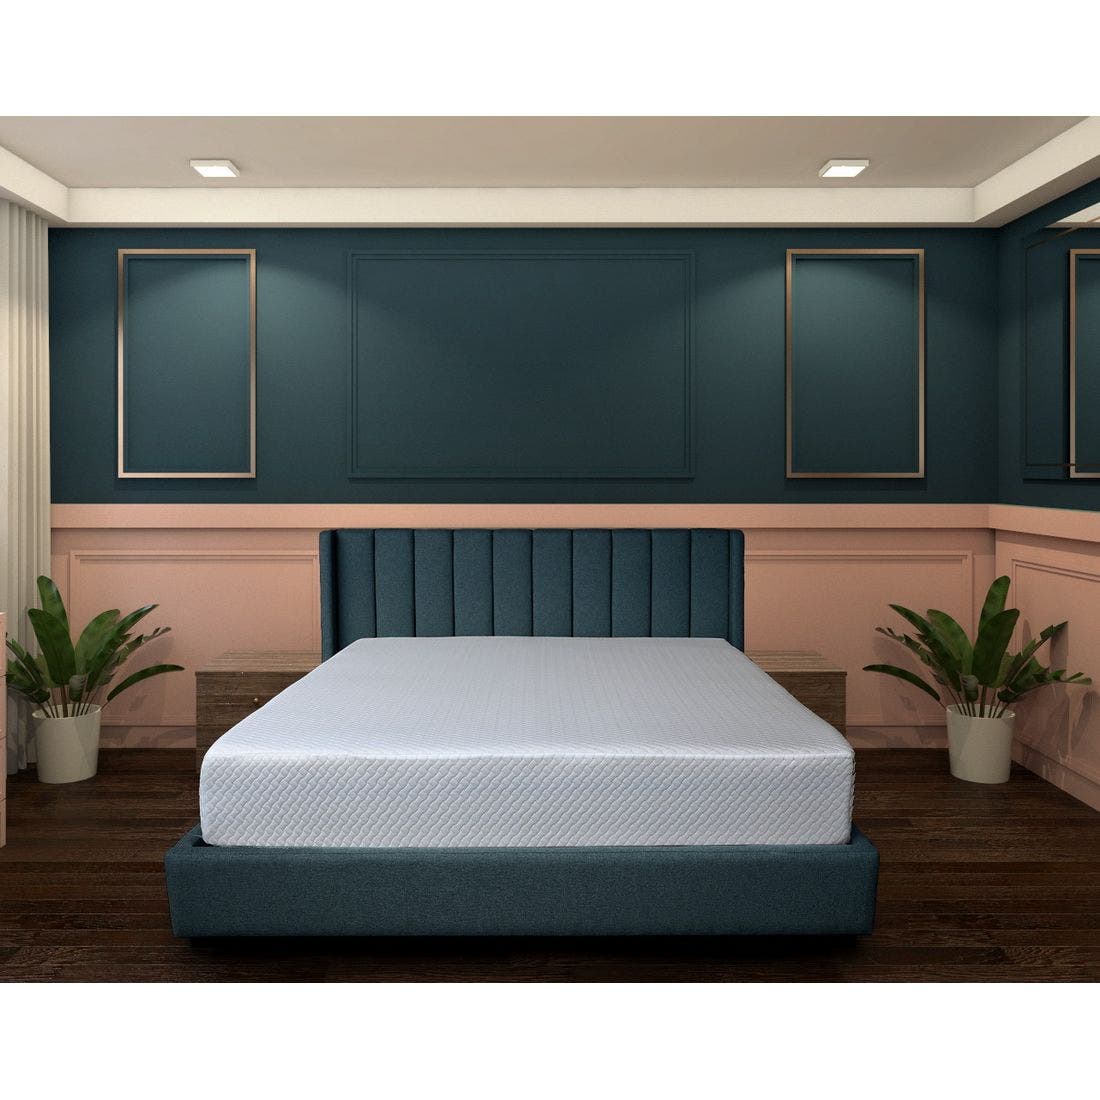 39015082-mattress-bedding-mattresses-pocket-spring-mattress-31